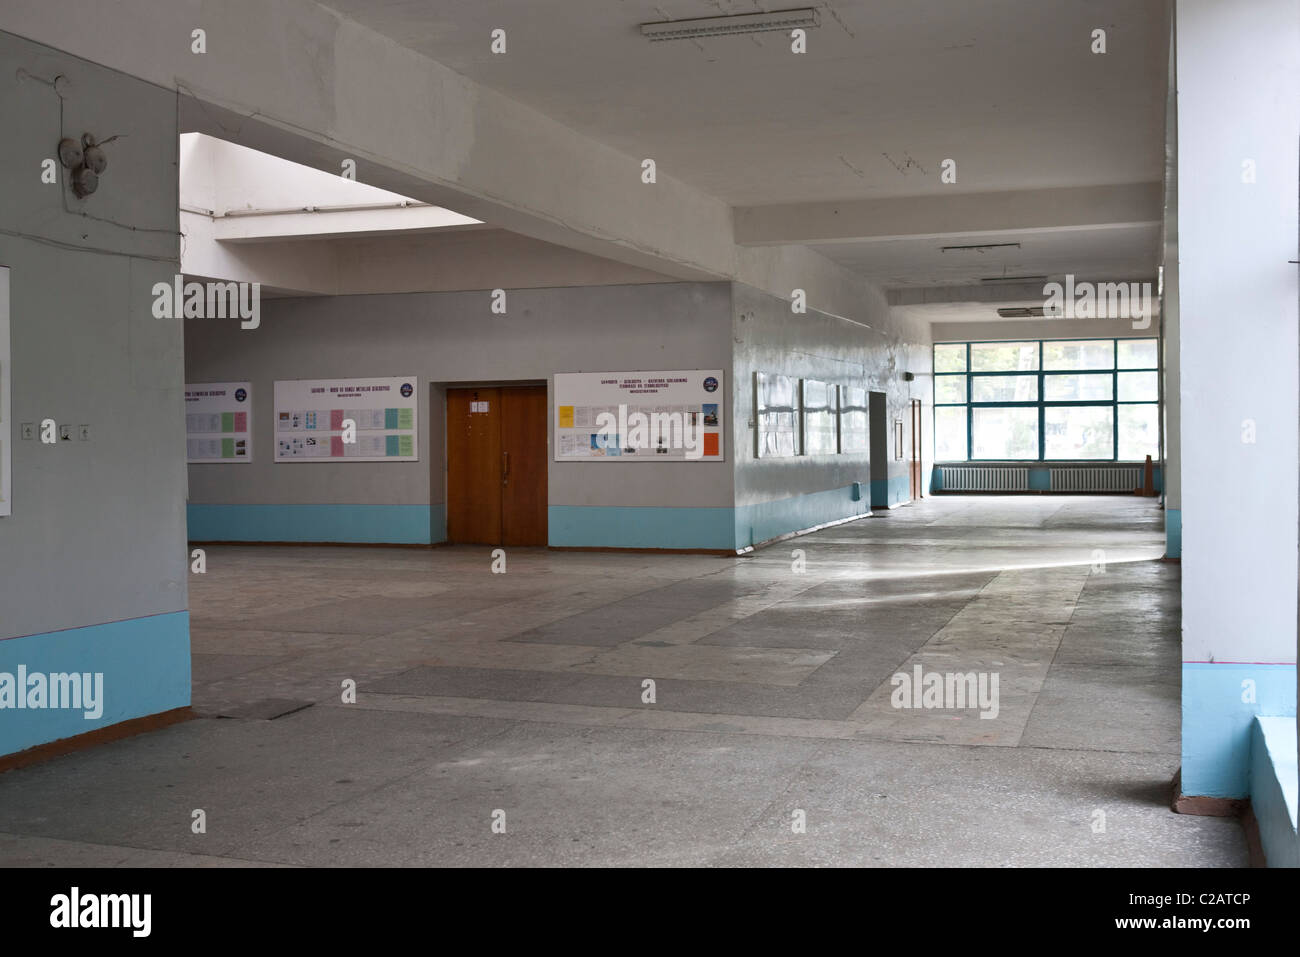 Empty school hallway Stock Photo